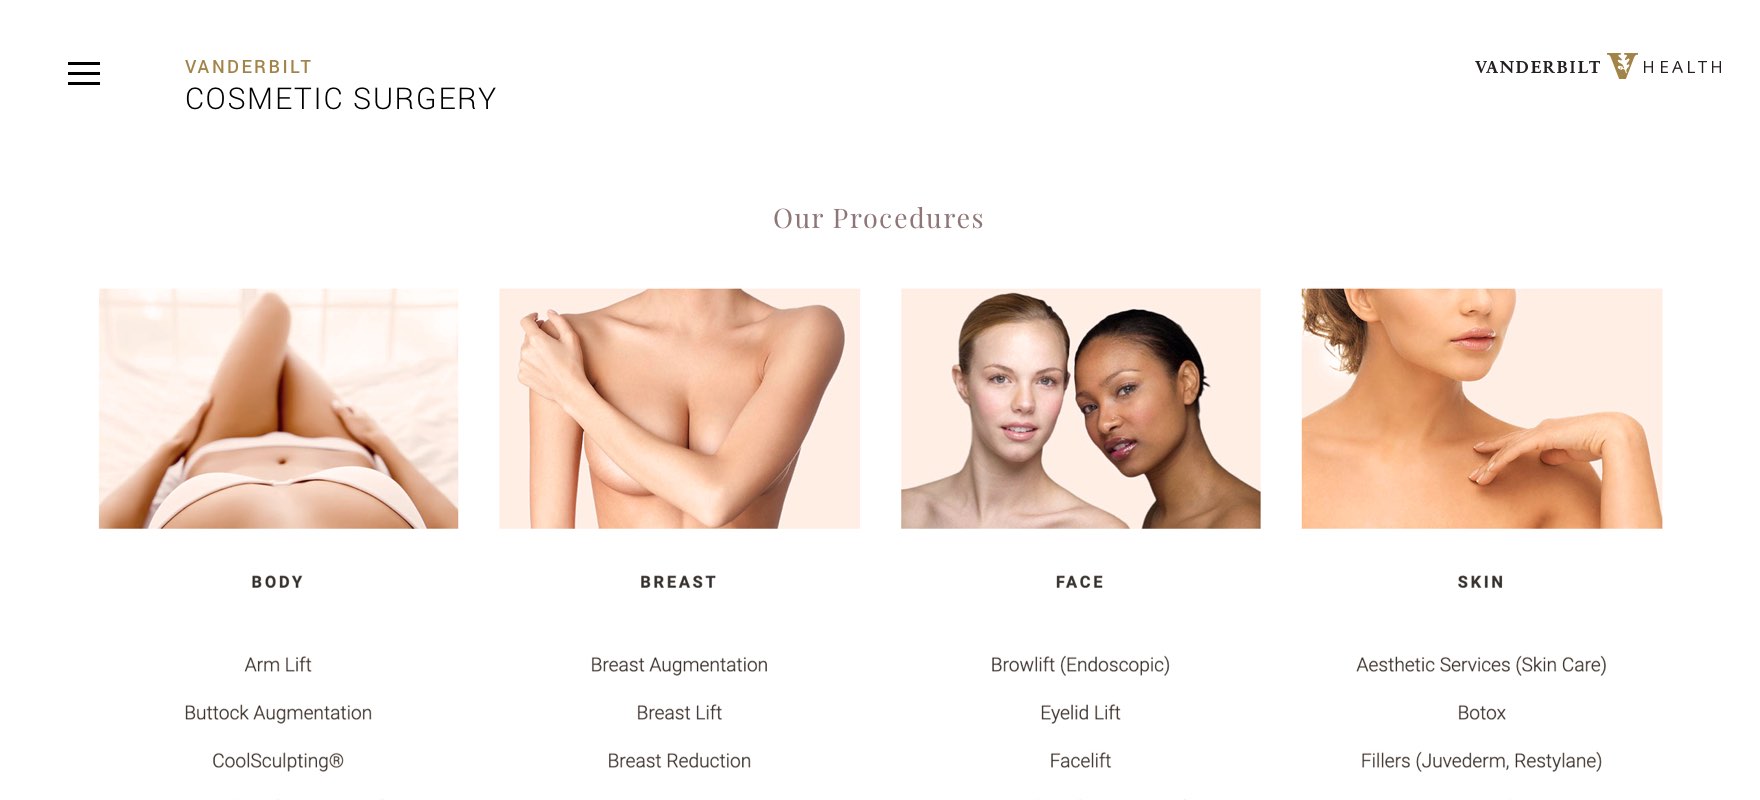 Vanderbilt Cosmetic Surgery website design